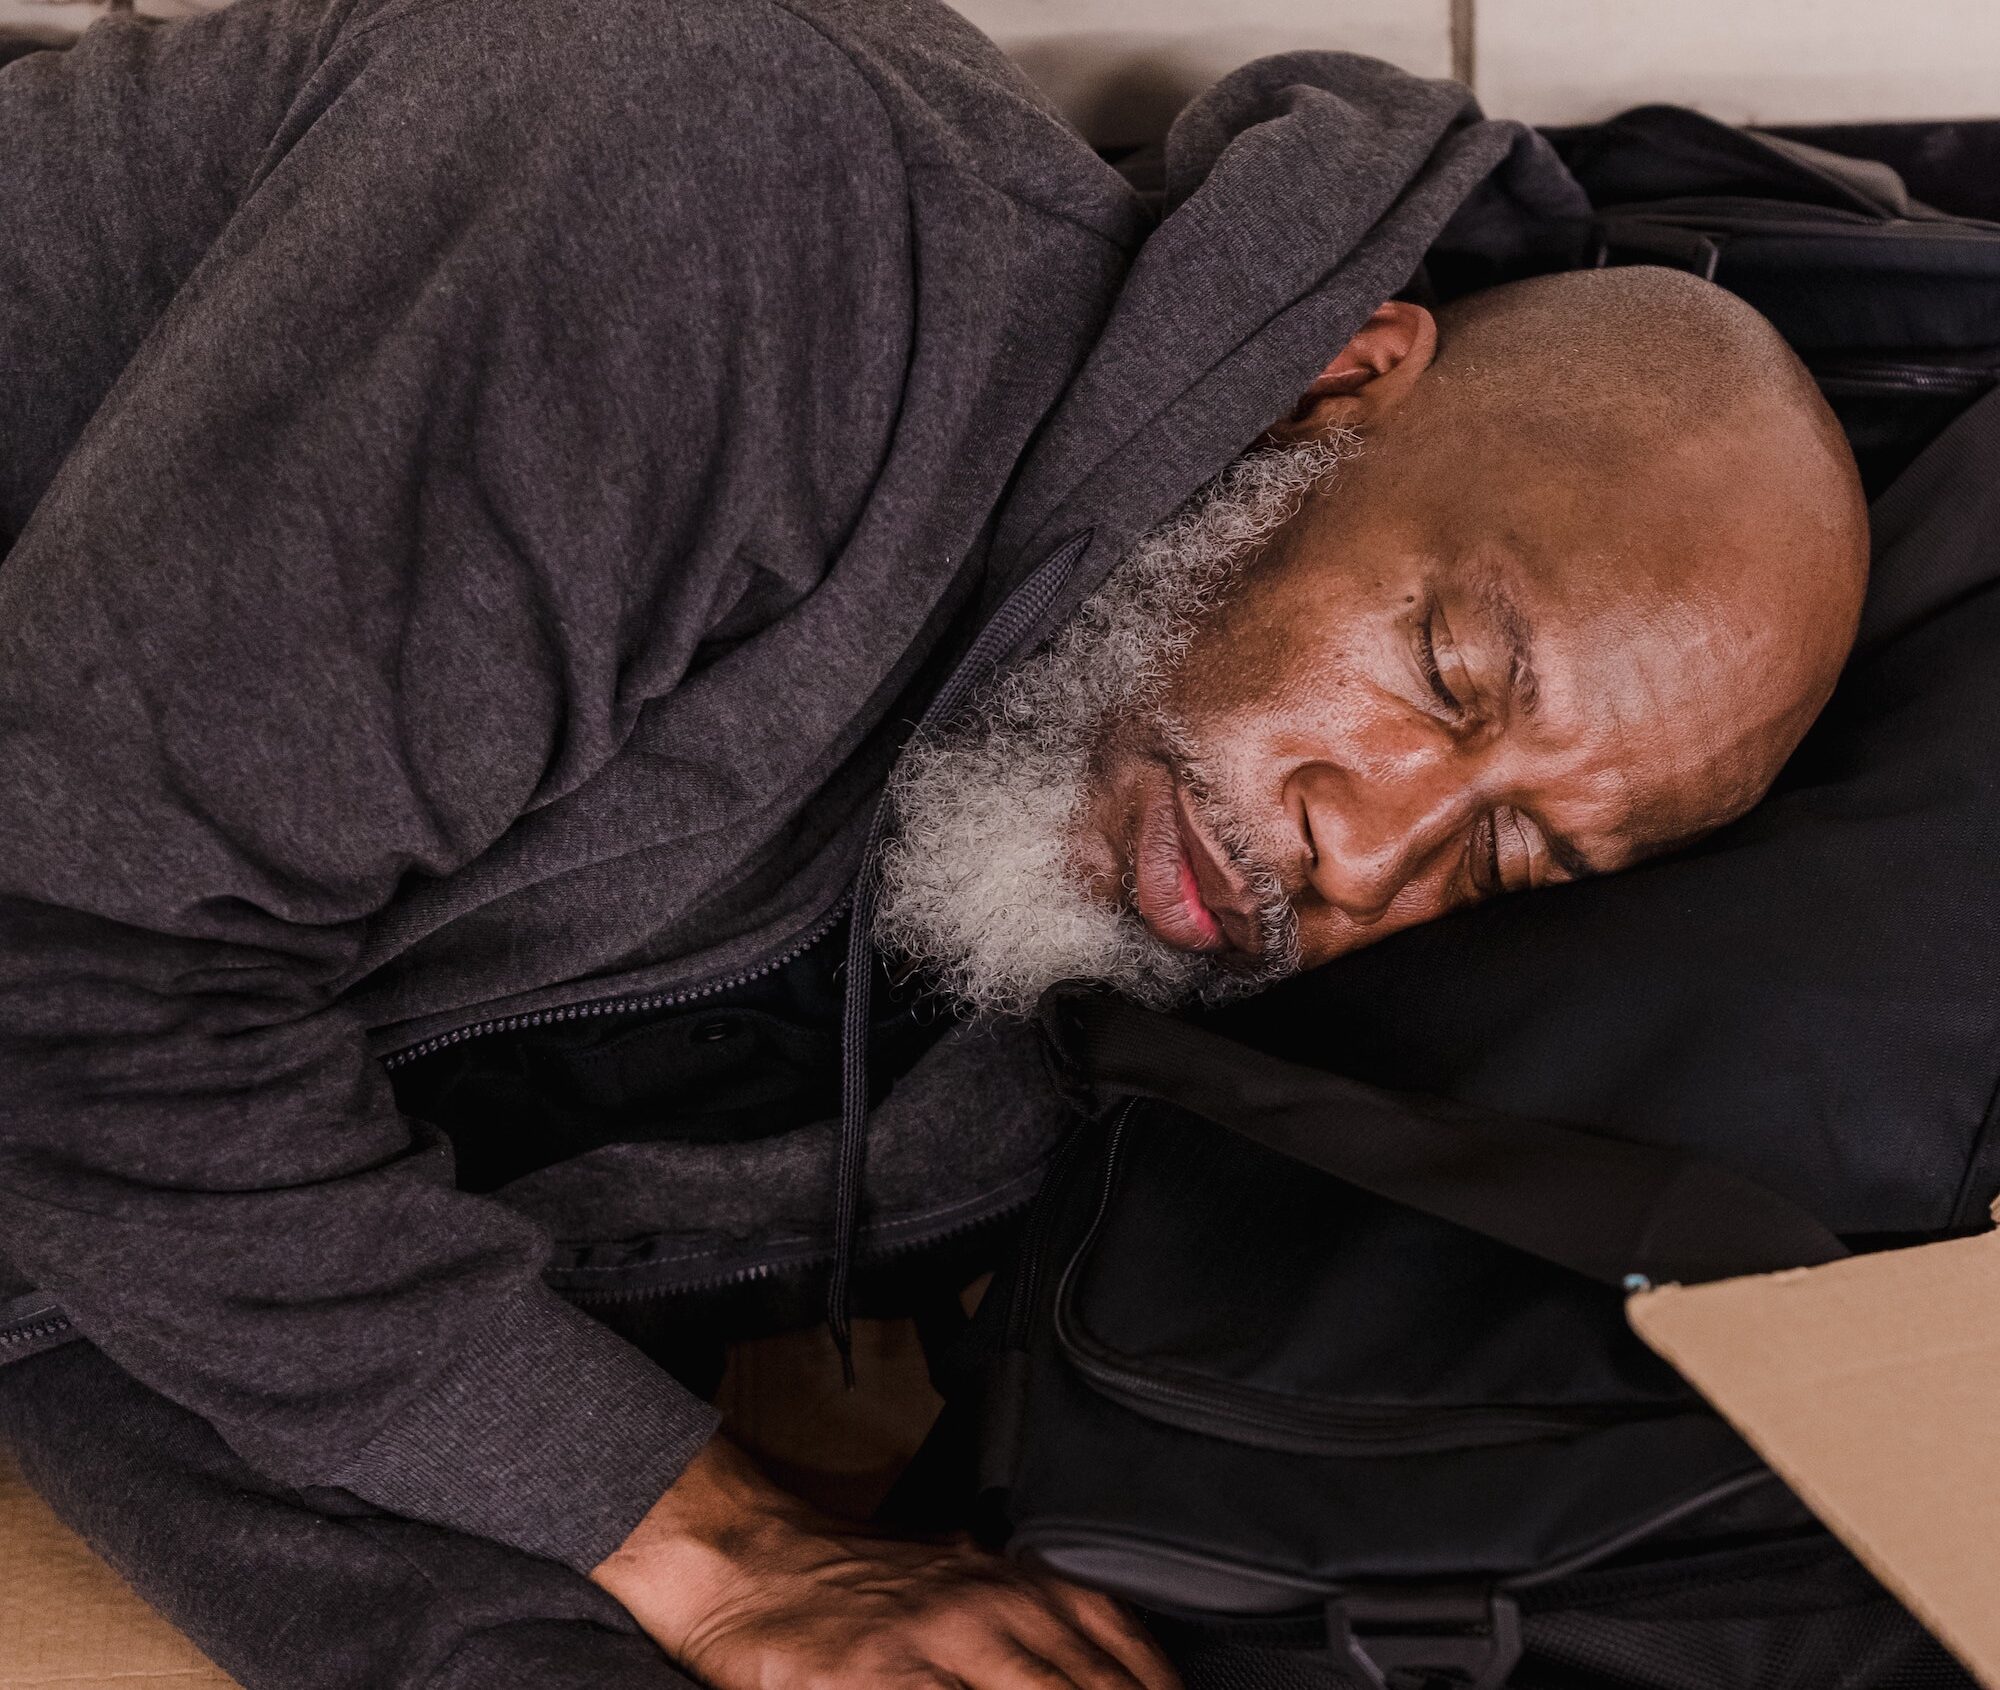 Nieuwe factsheets: Ervaringen van dakloze mensen en zorg- en opvangmedewerkers